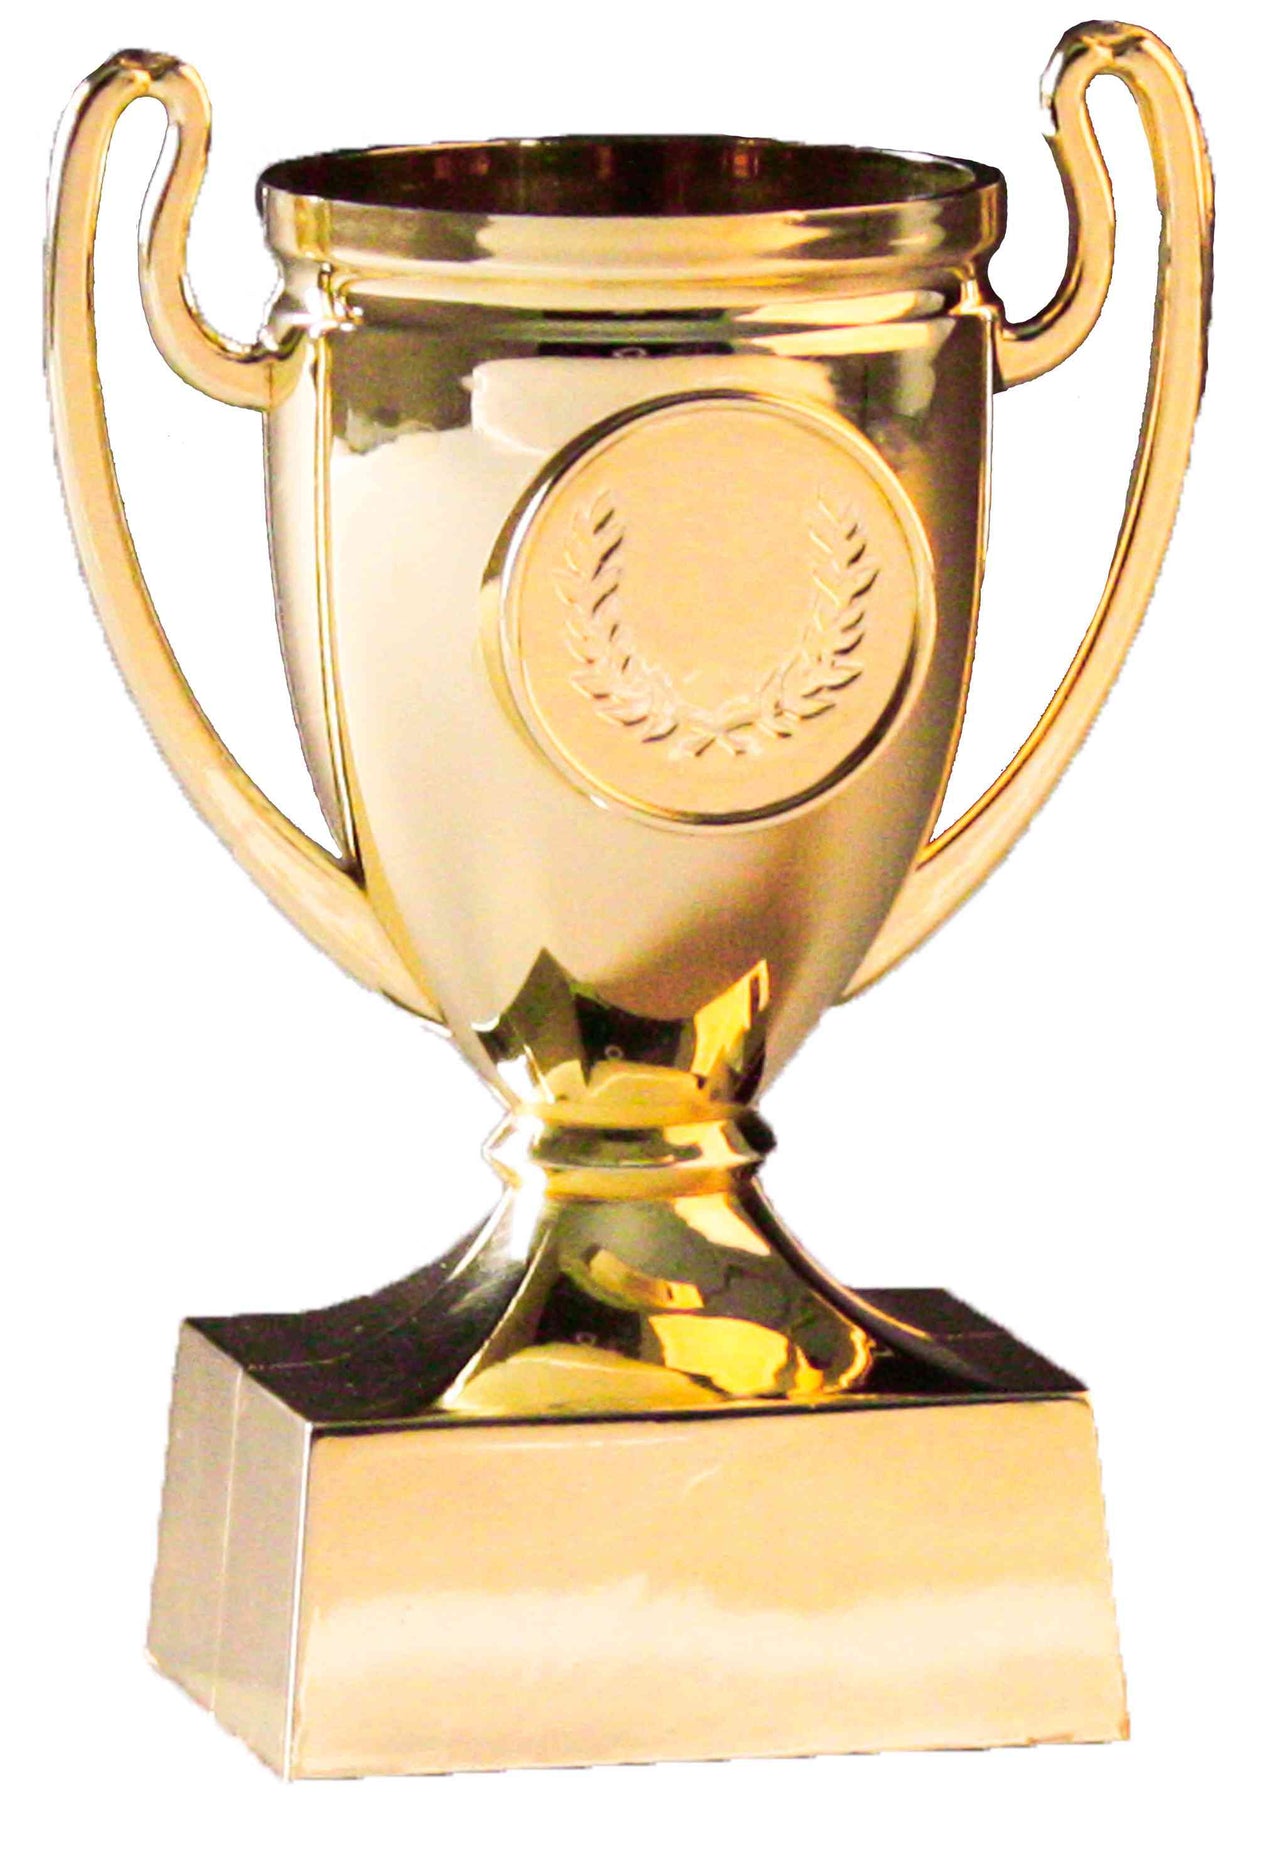 Goldener Pokal mit zwei Henkeln und einer blanken Medaille, montiert auf einem schwarzen rechteckigen Sockel der Pokale Frankenthal 3-er Pokalserie 110 mm PK739626-3-E25.